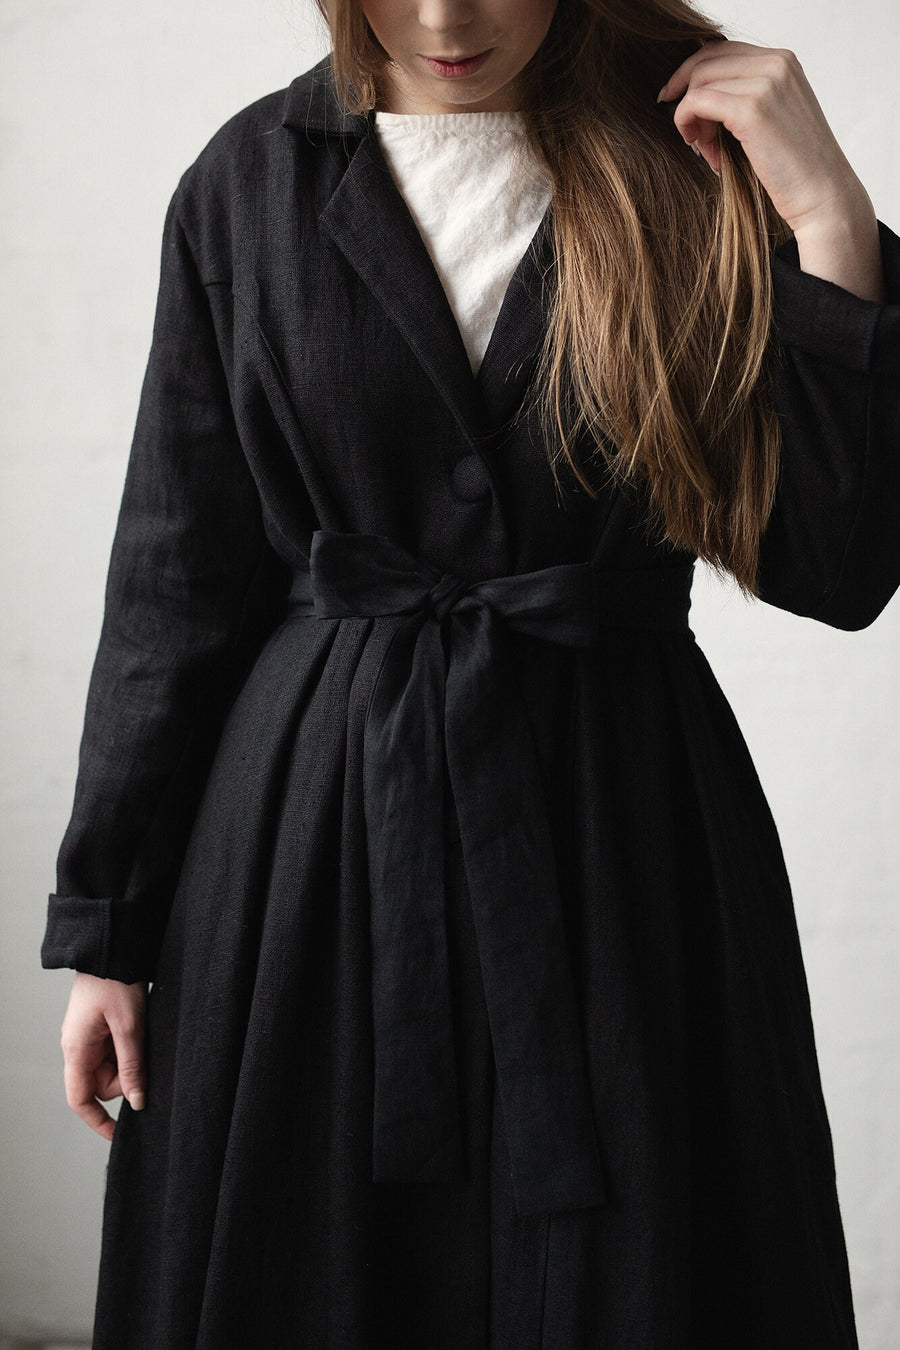 Black Jane Austen Coat